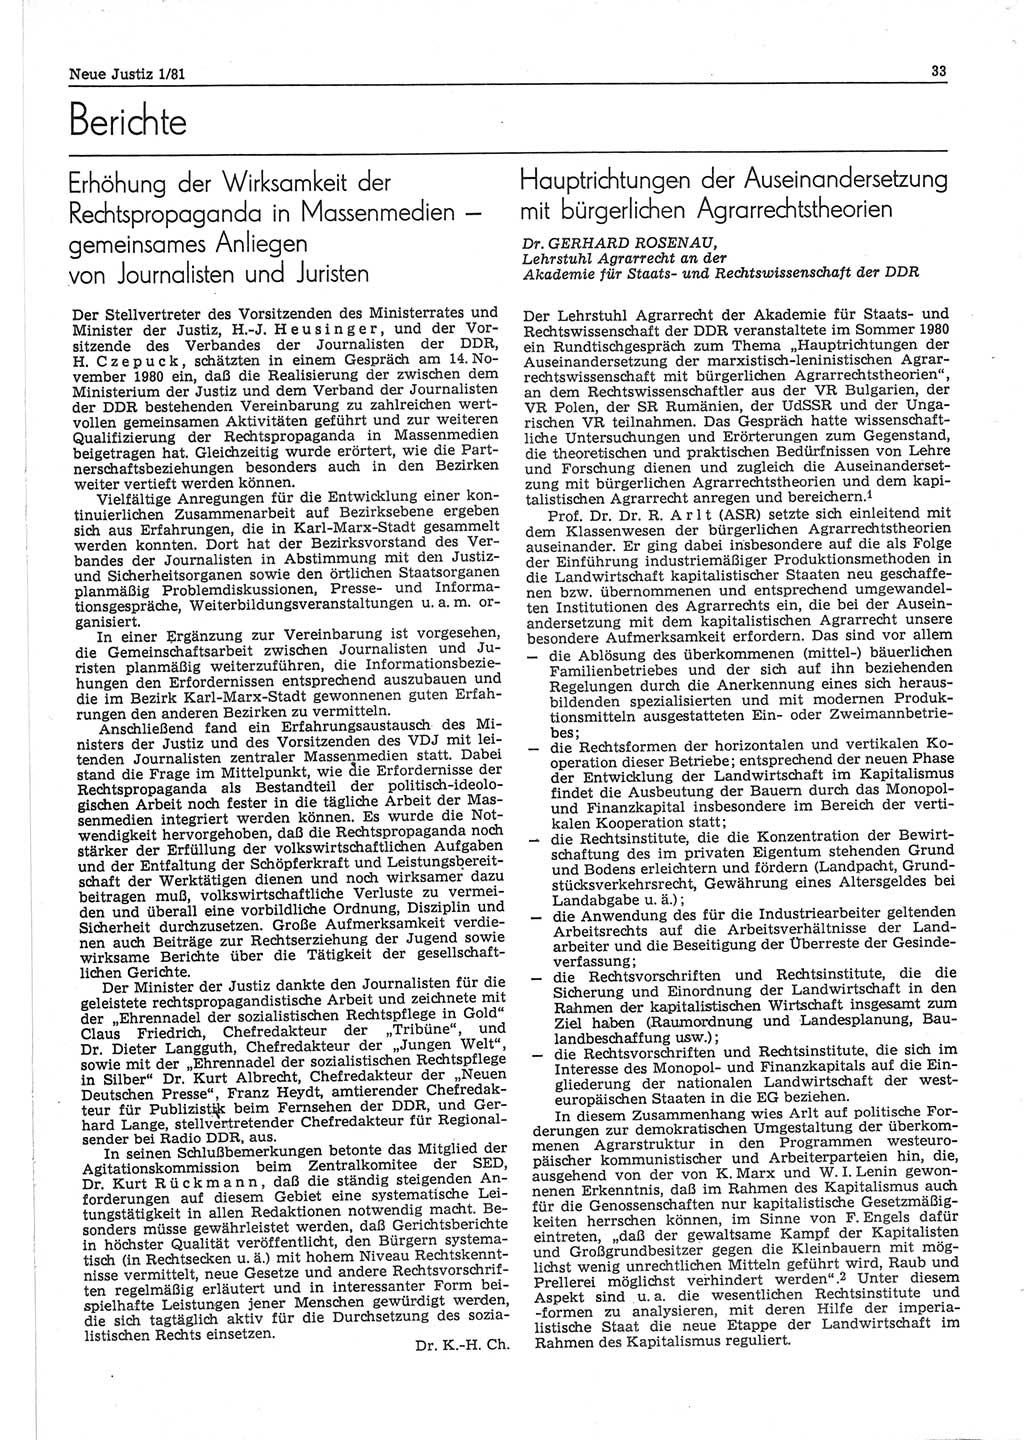 Neue Justiz (NJ), Zeitschrift für sozialistisches Recht und Gesetzlichkeit [Deutsche Demokratische Republik (DDR)], 35. Jahrgang 1981, Seite 33 (NJ DDR 1981, S. 33)